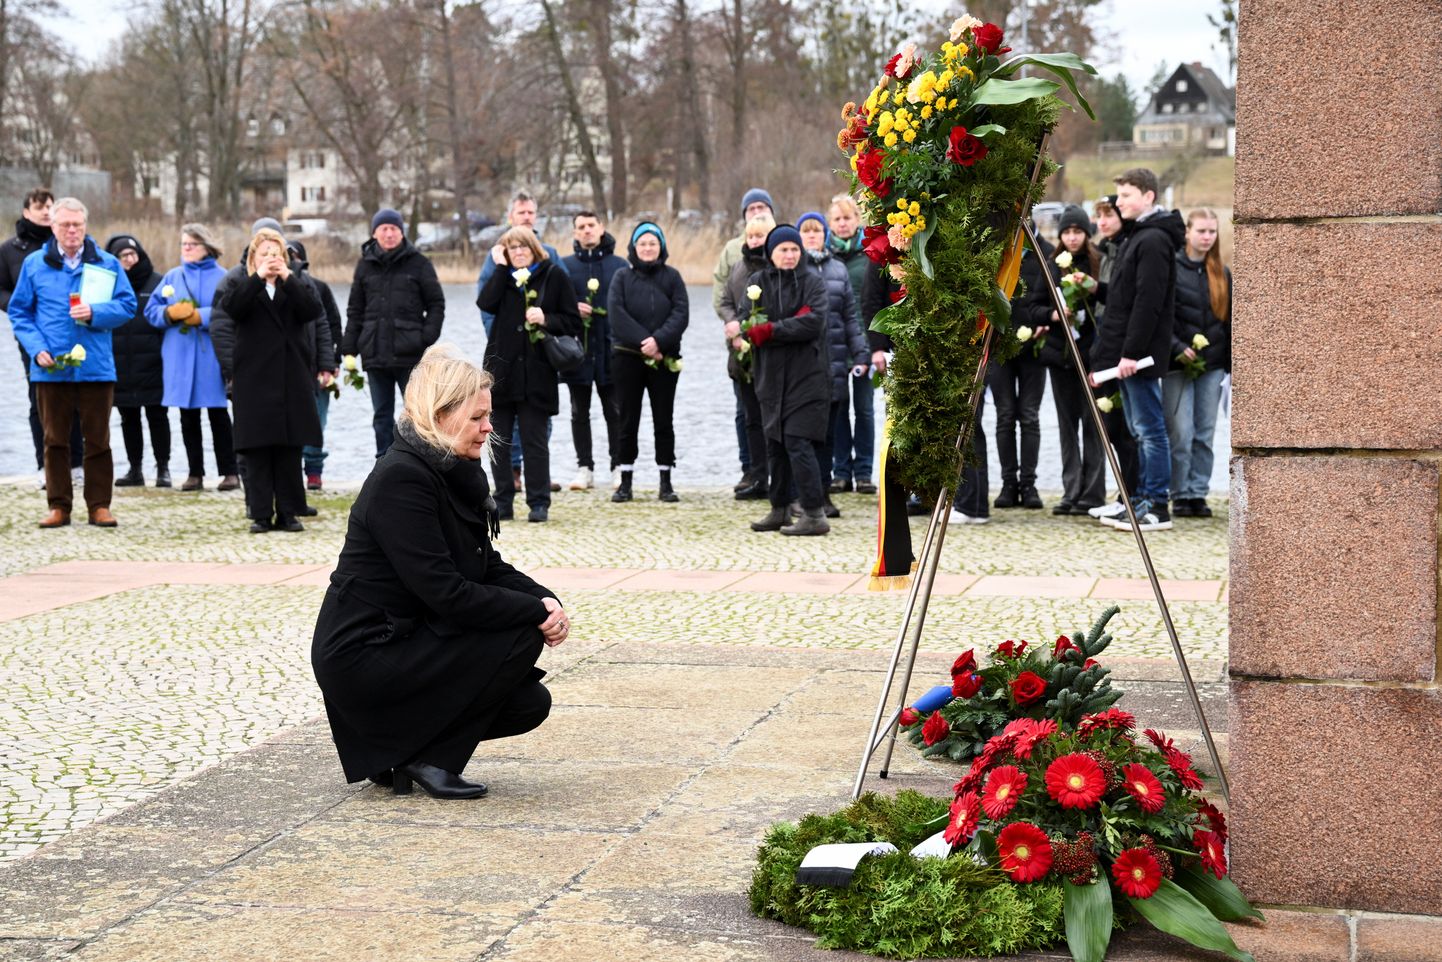 Vācijas iekšlietu ministre Nensija Fēzere piedalās vainagu nolikšanas ceremonijā pie bronzas skulptūras “Nesējs” Ravensbrikas memoriālā Starptautiskajā holokausta upuru piemiņas dienā 27. janvārī Fuerstenbergā, Vācijā